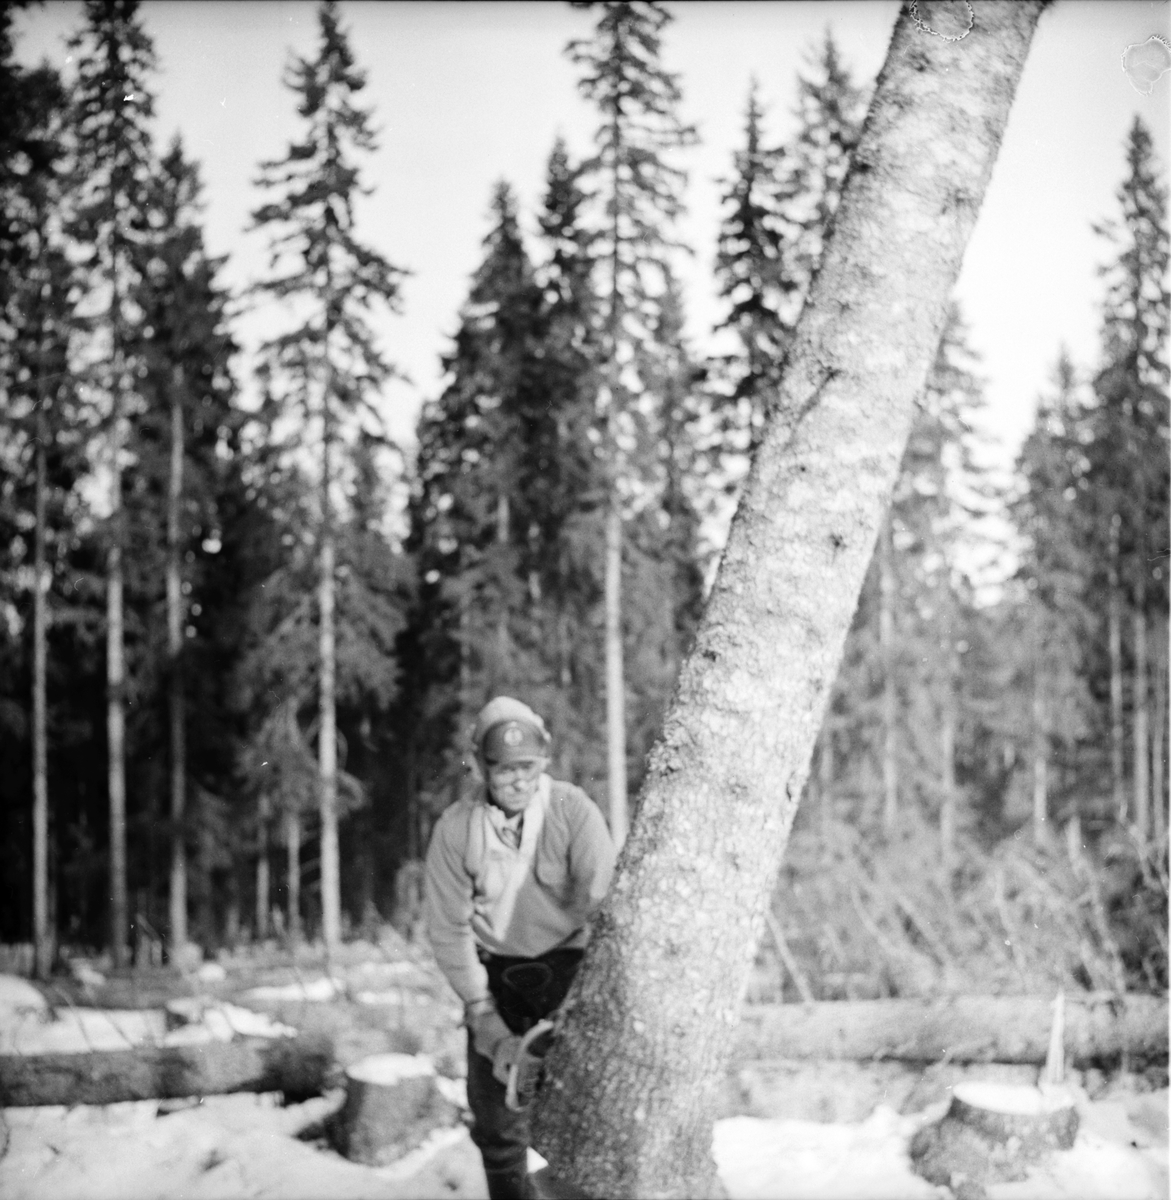 Nian-Noret. Taito Sutinen fäller ett träd.
Skogsdrivning repotage.
Mars 1973